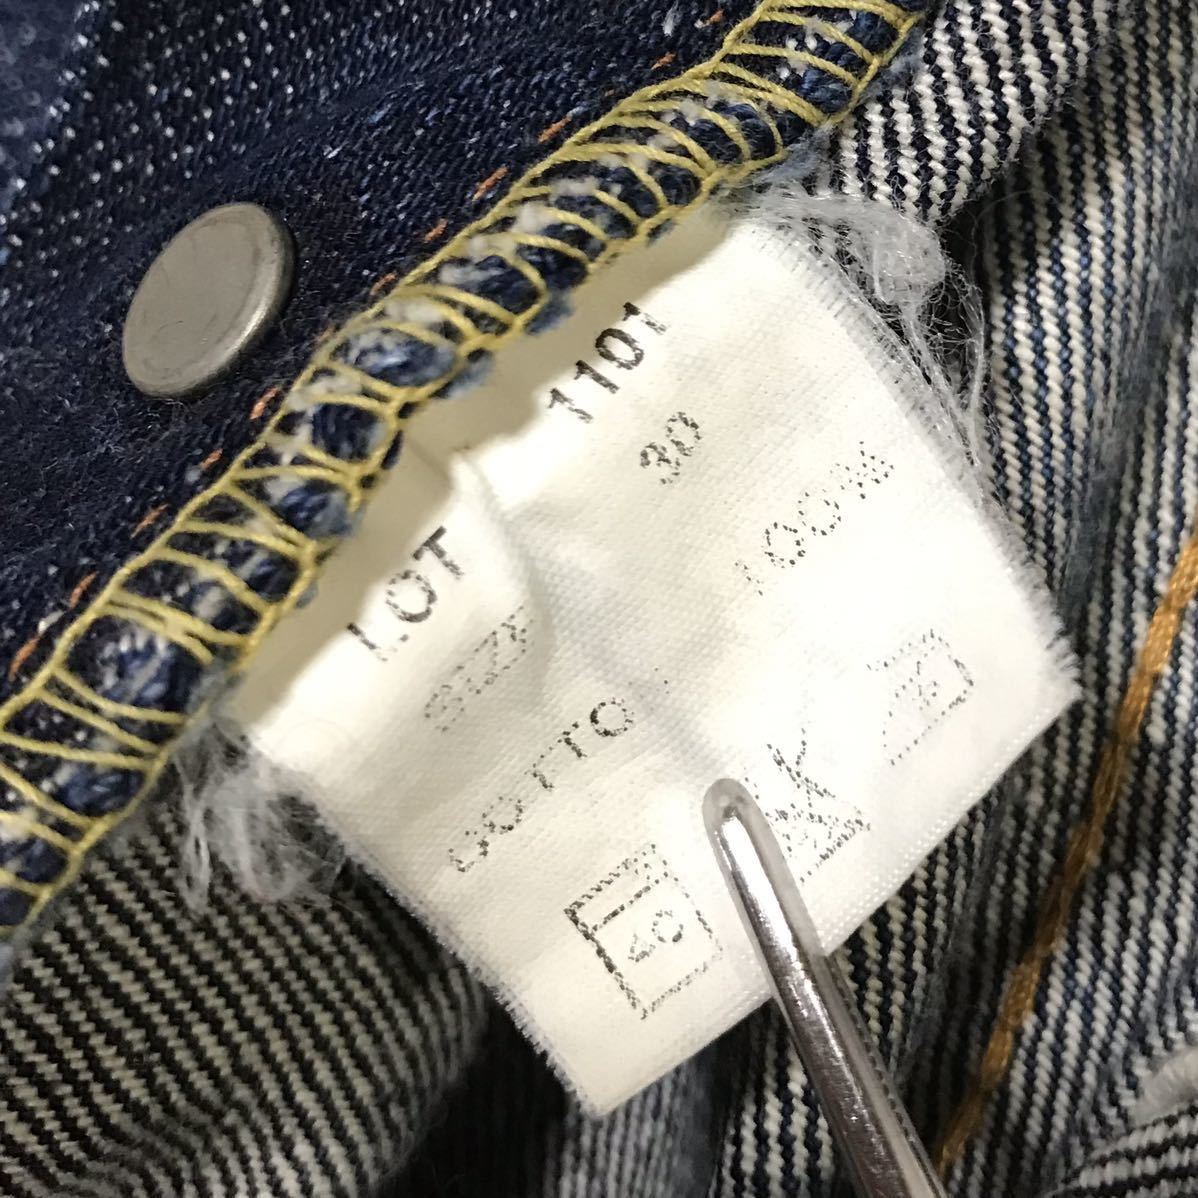 [FULLCOUNT] старый Fullcount 50s 501XX Vintage копия джинсы W30 индиго hige красный уголок Denim брюки 1101 R только tab редкость стандартный 